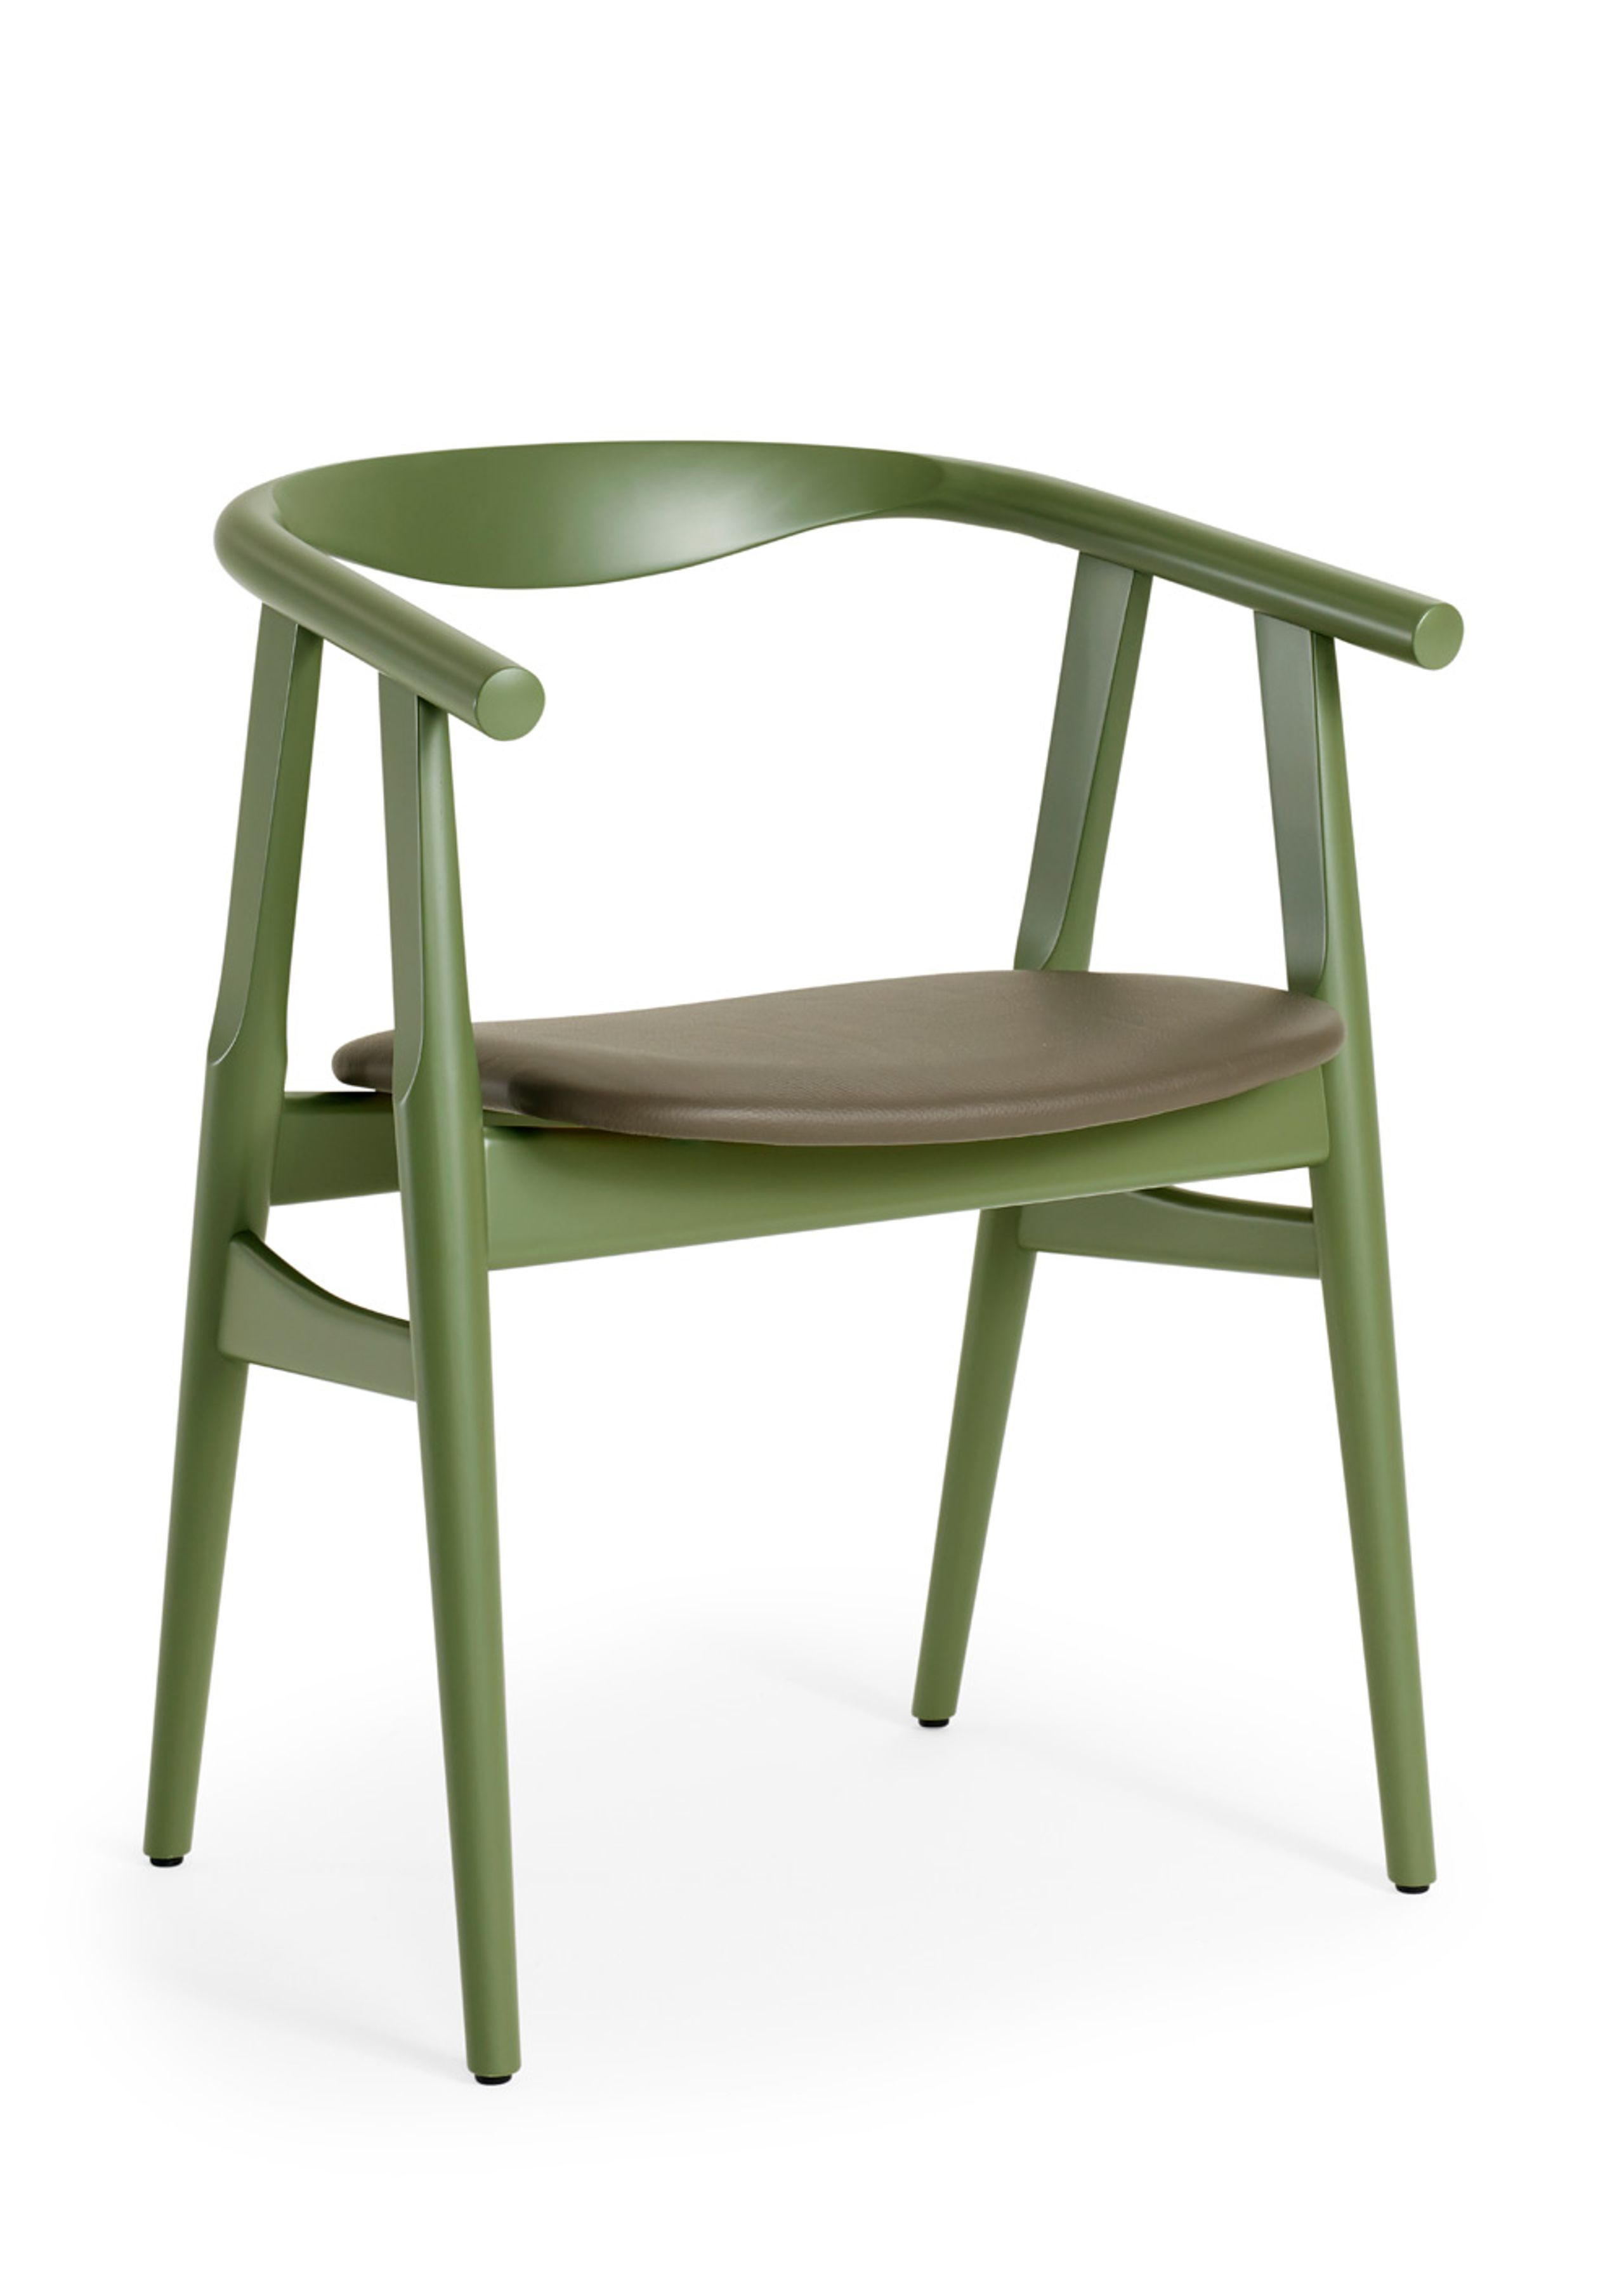 / The U-Chair / by Hans J. Wegner - Stoel - Getama